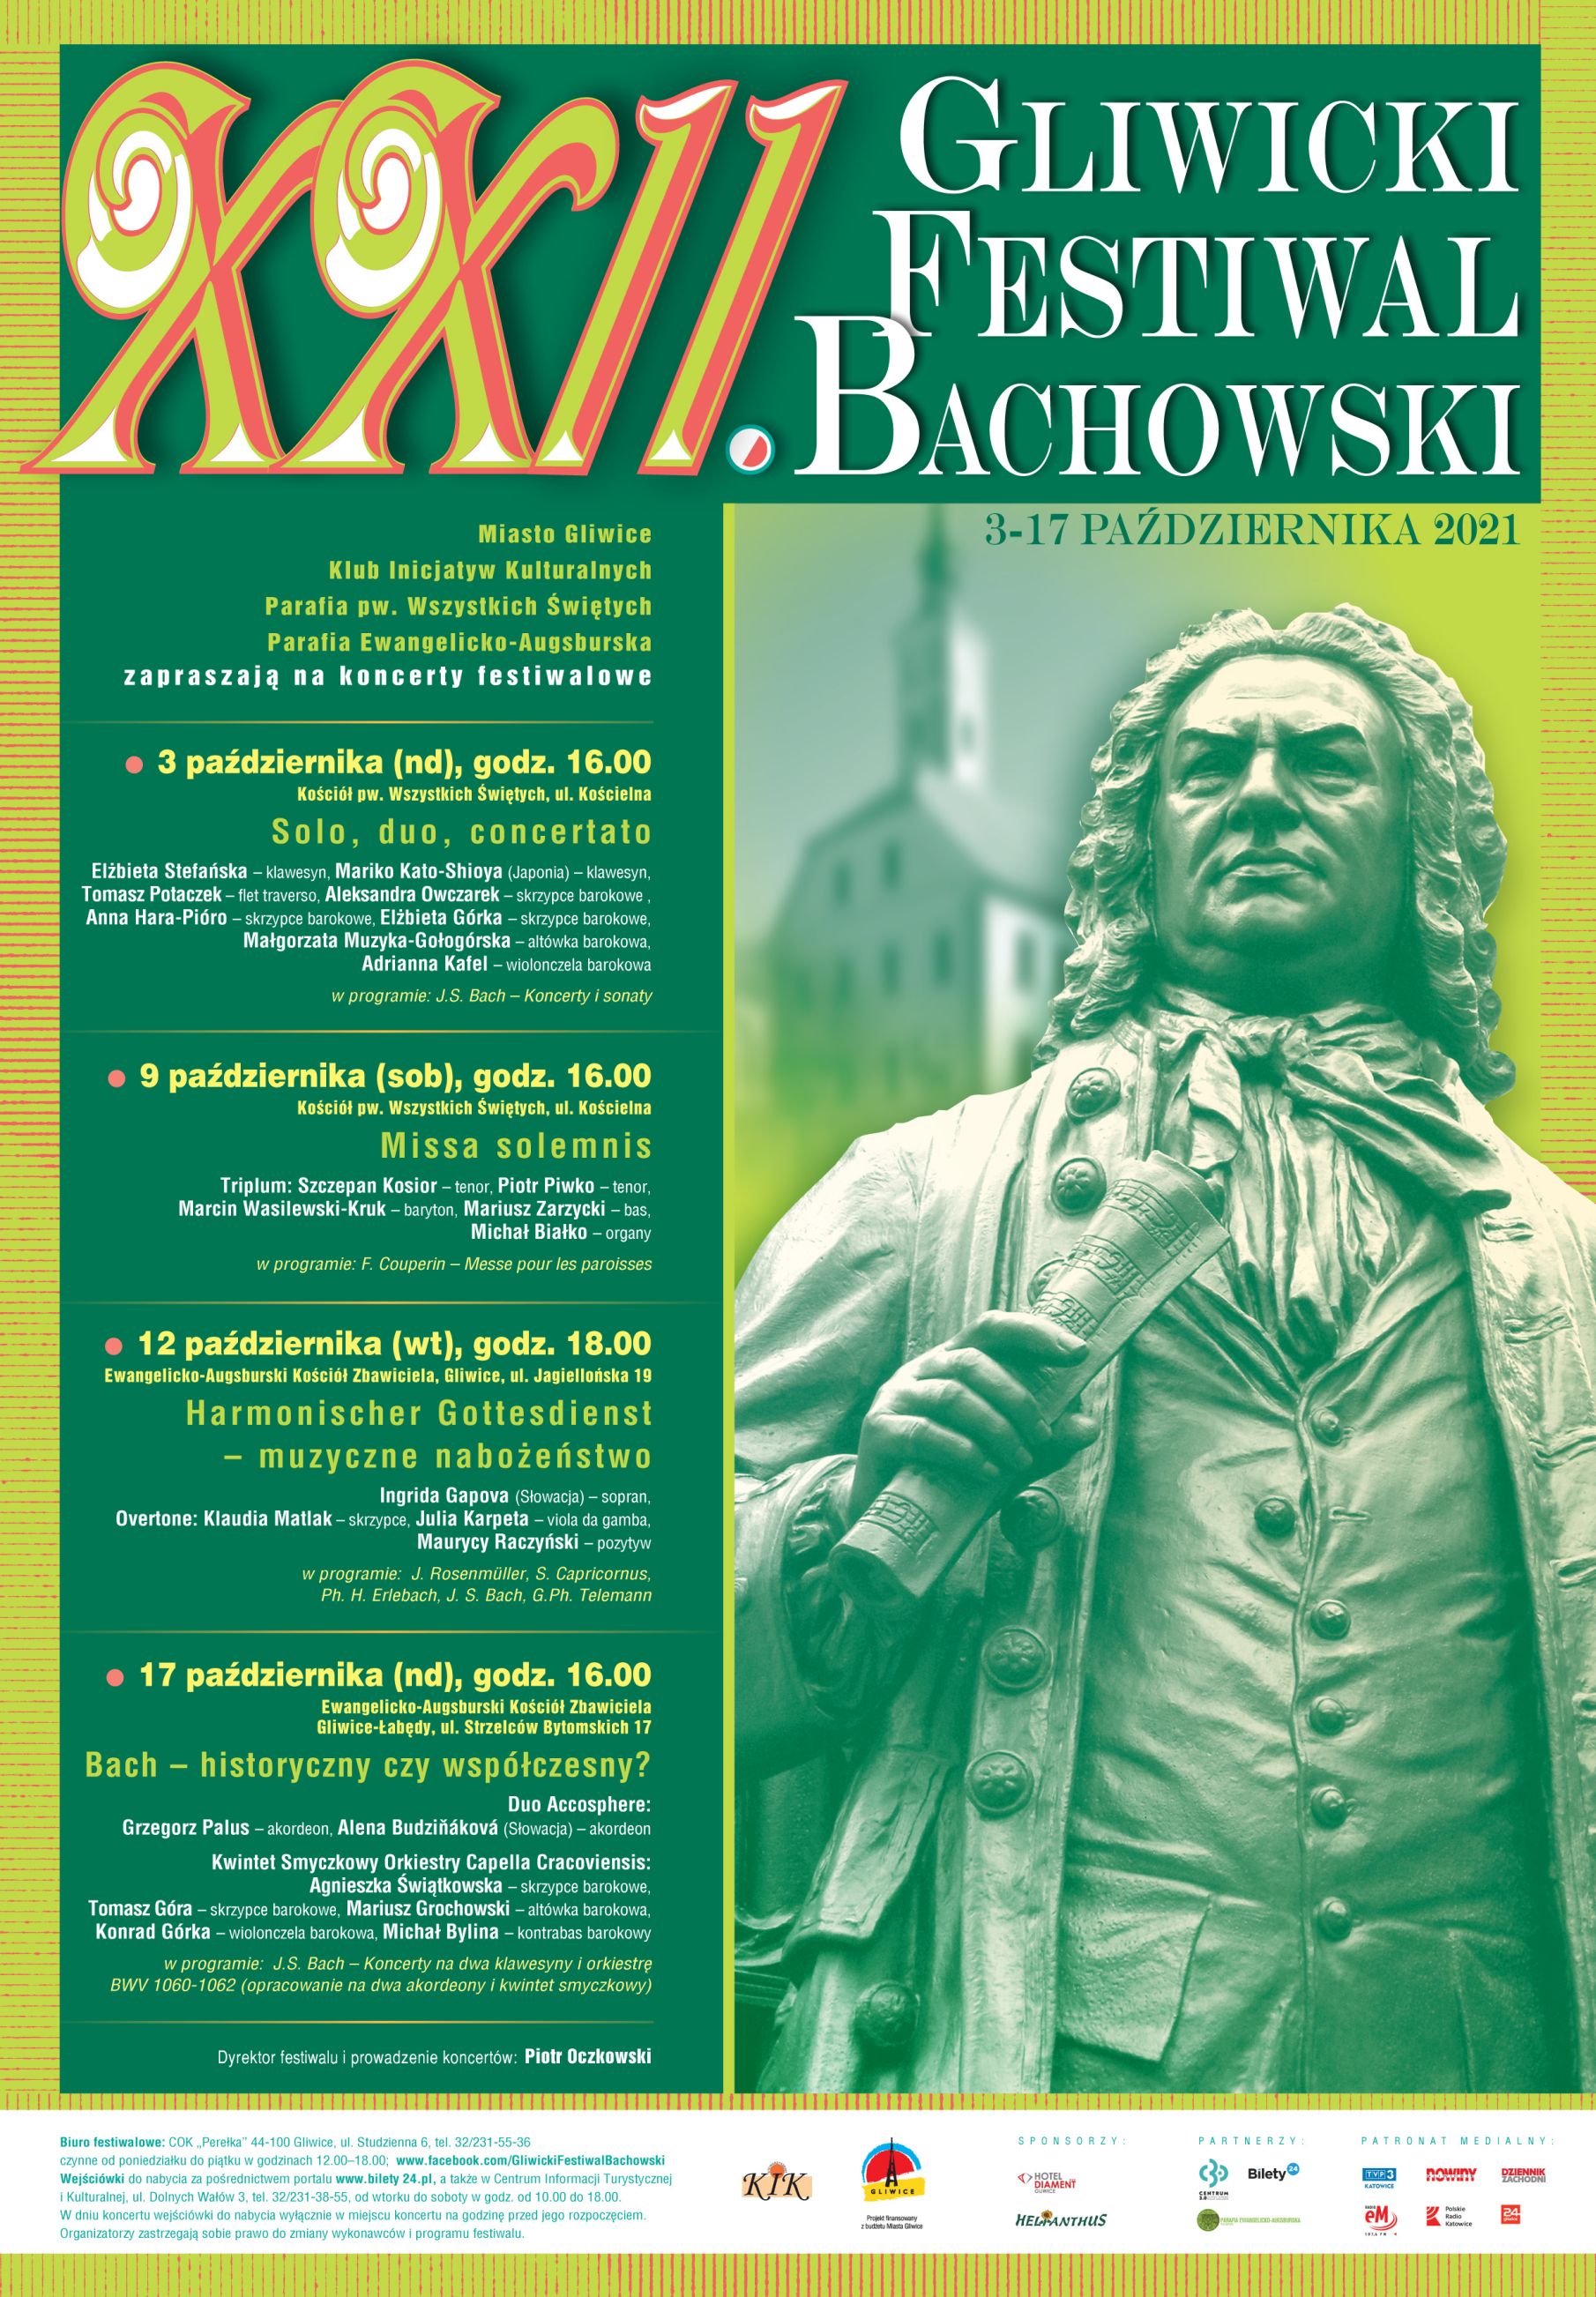 XXII Gliwicki Festiwal Bachowski